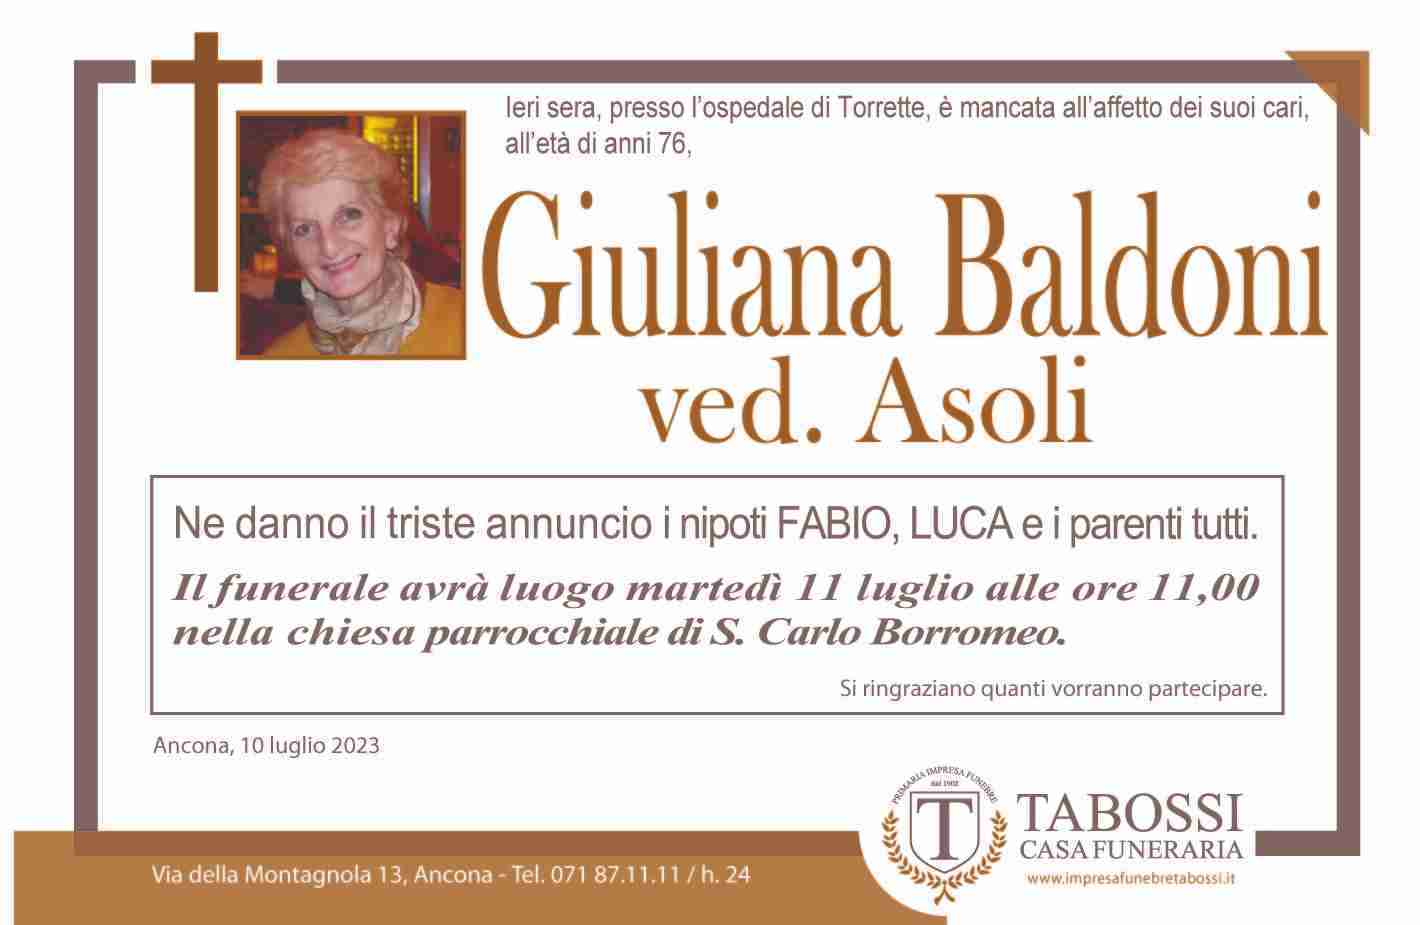 Giuliana Baldoni